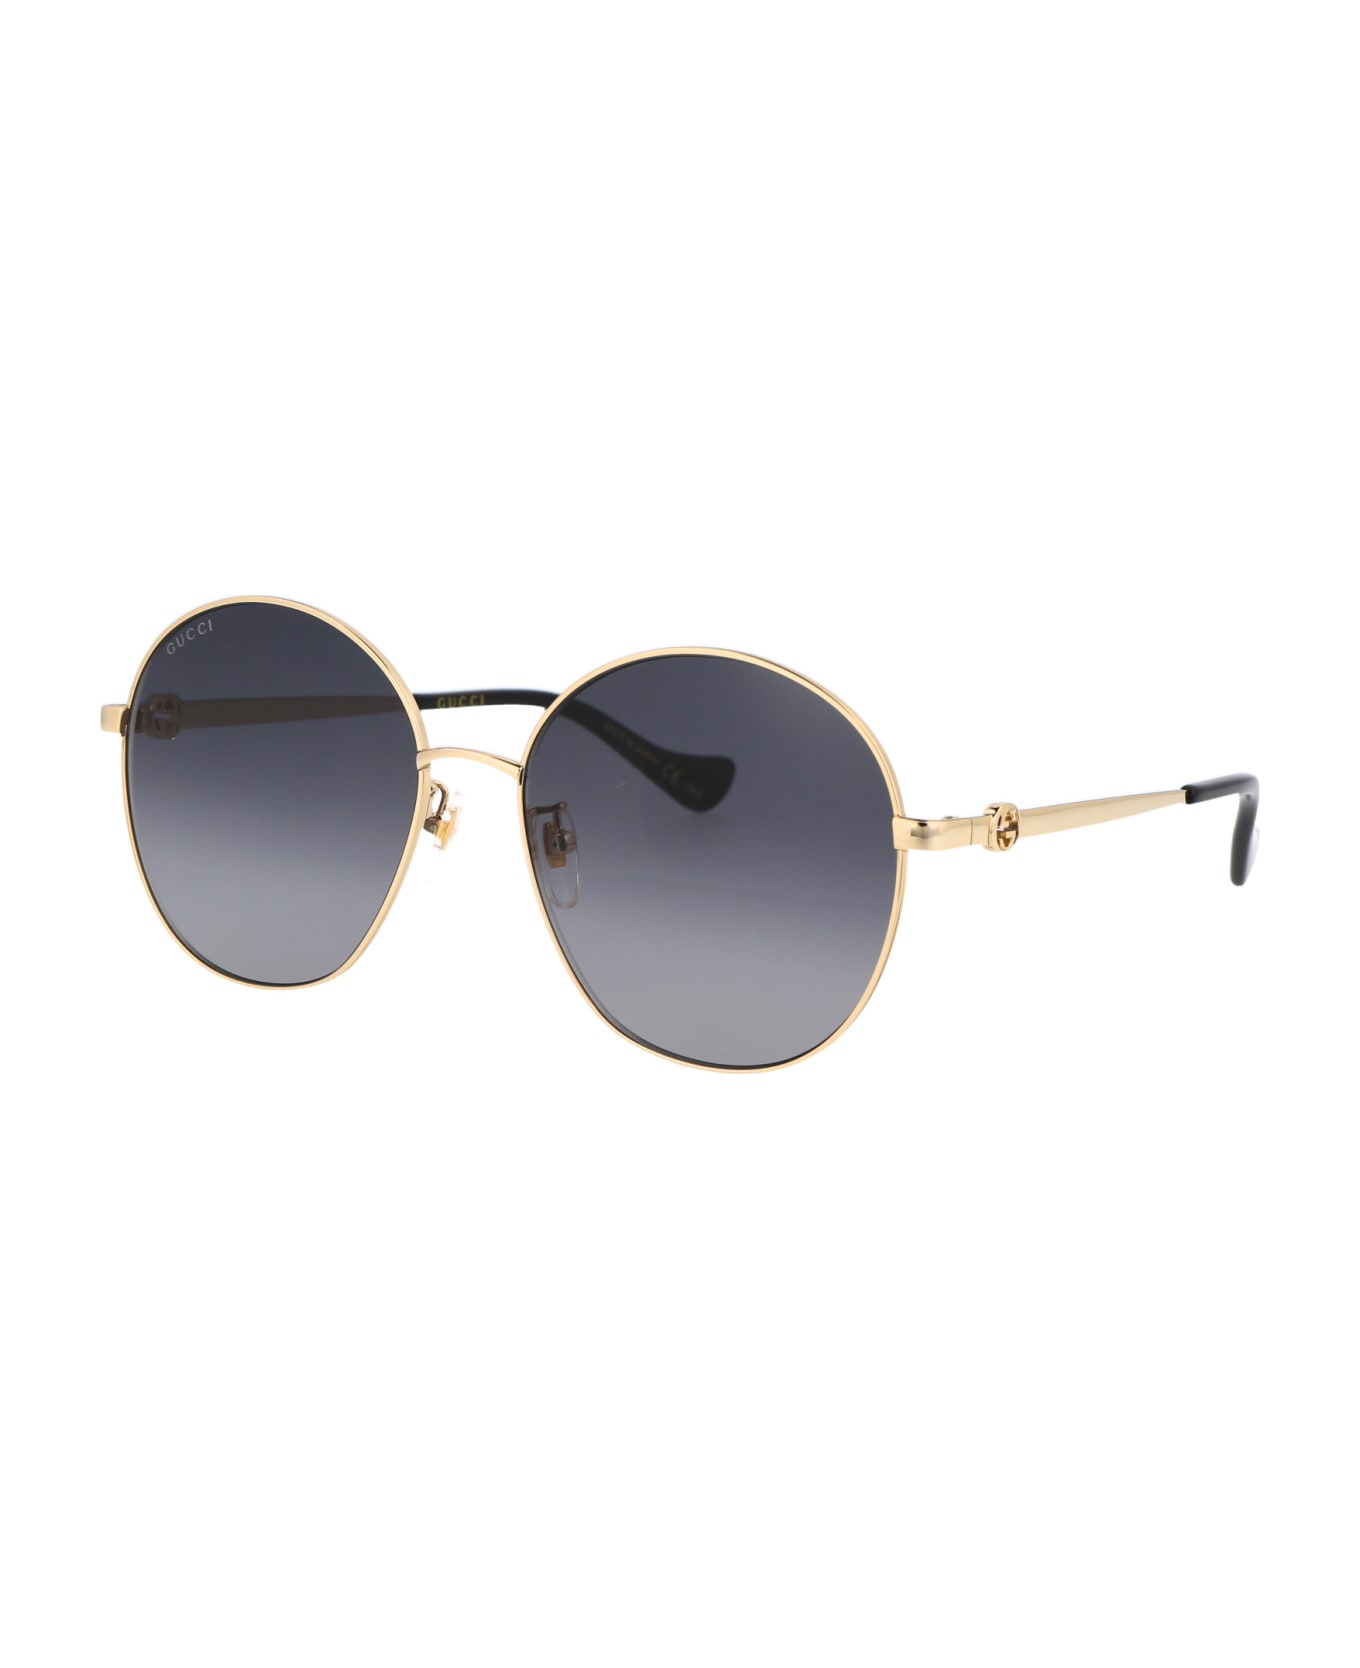 Gucci Eyewear Gg1090sa Sunglasses - 001 GOLD GOLD GREY